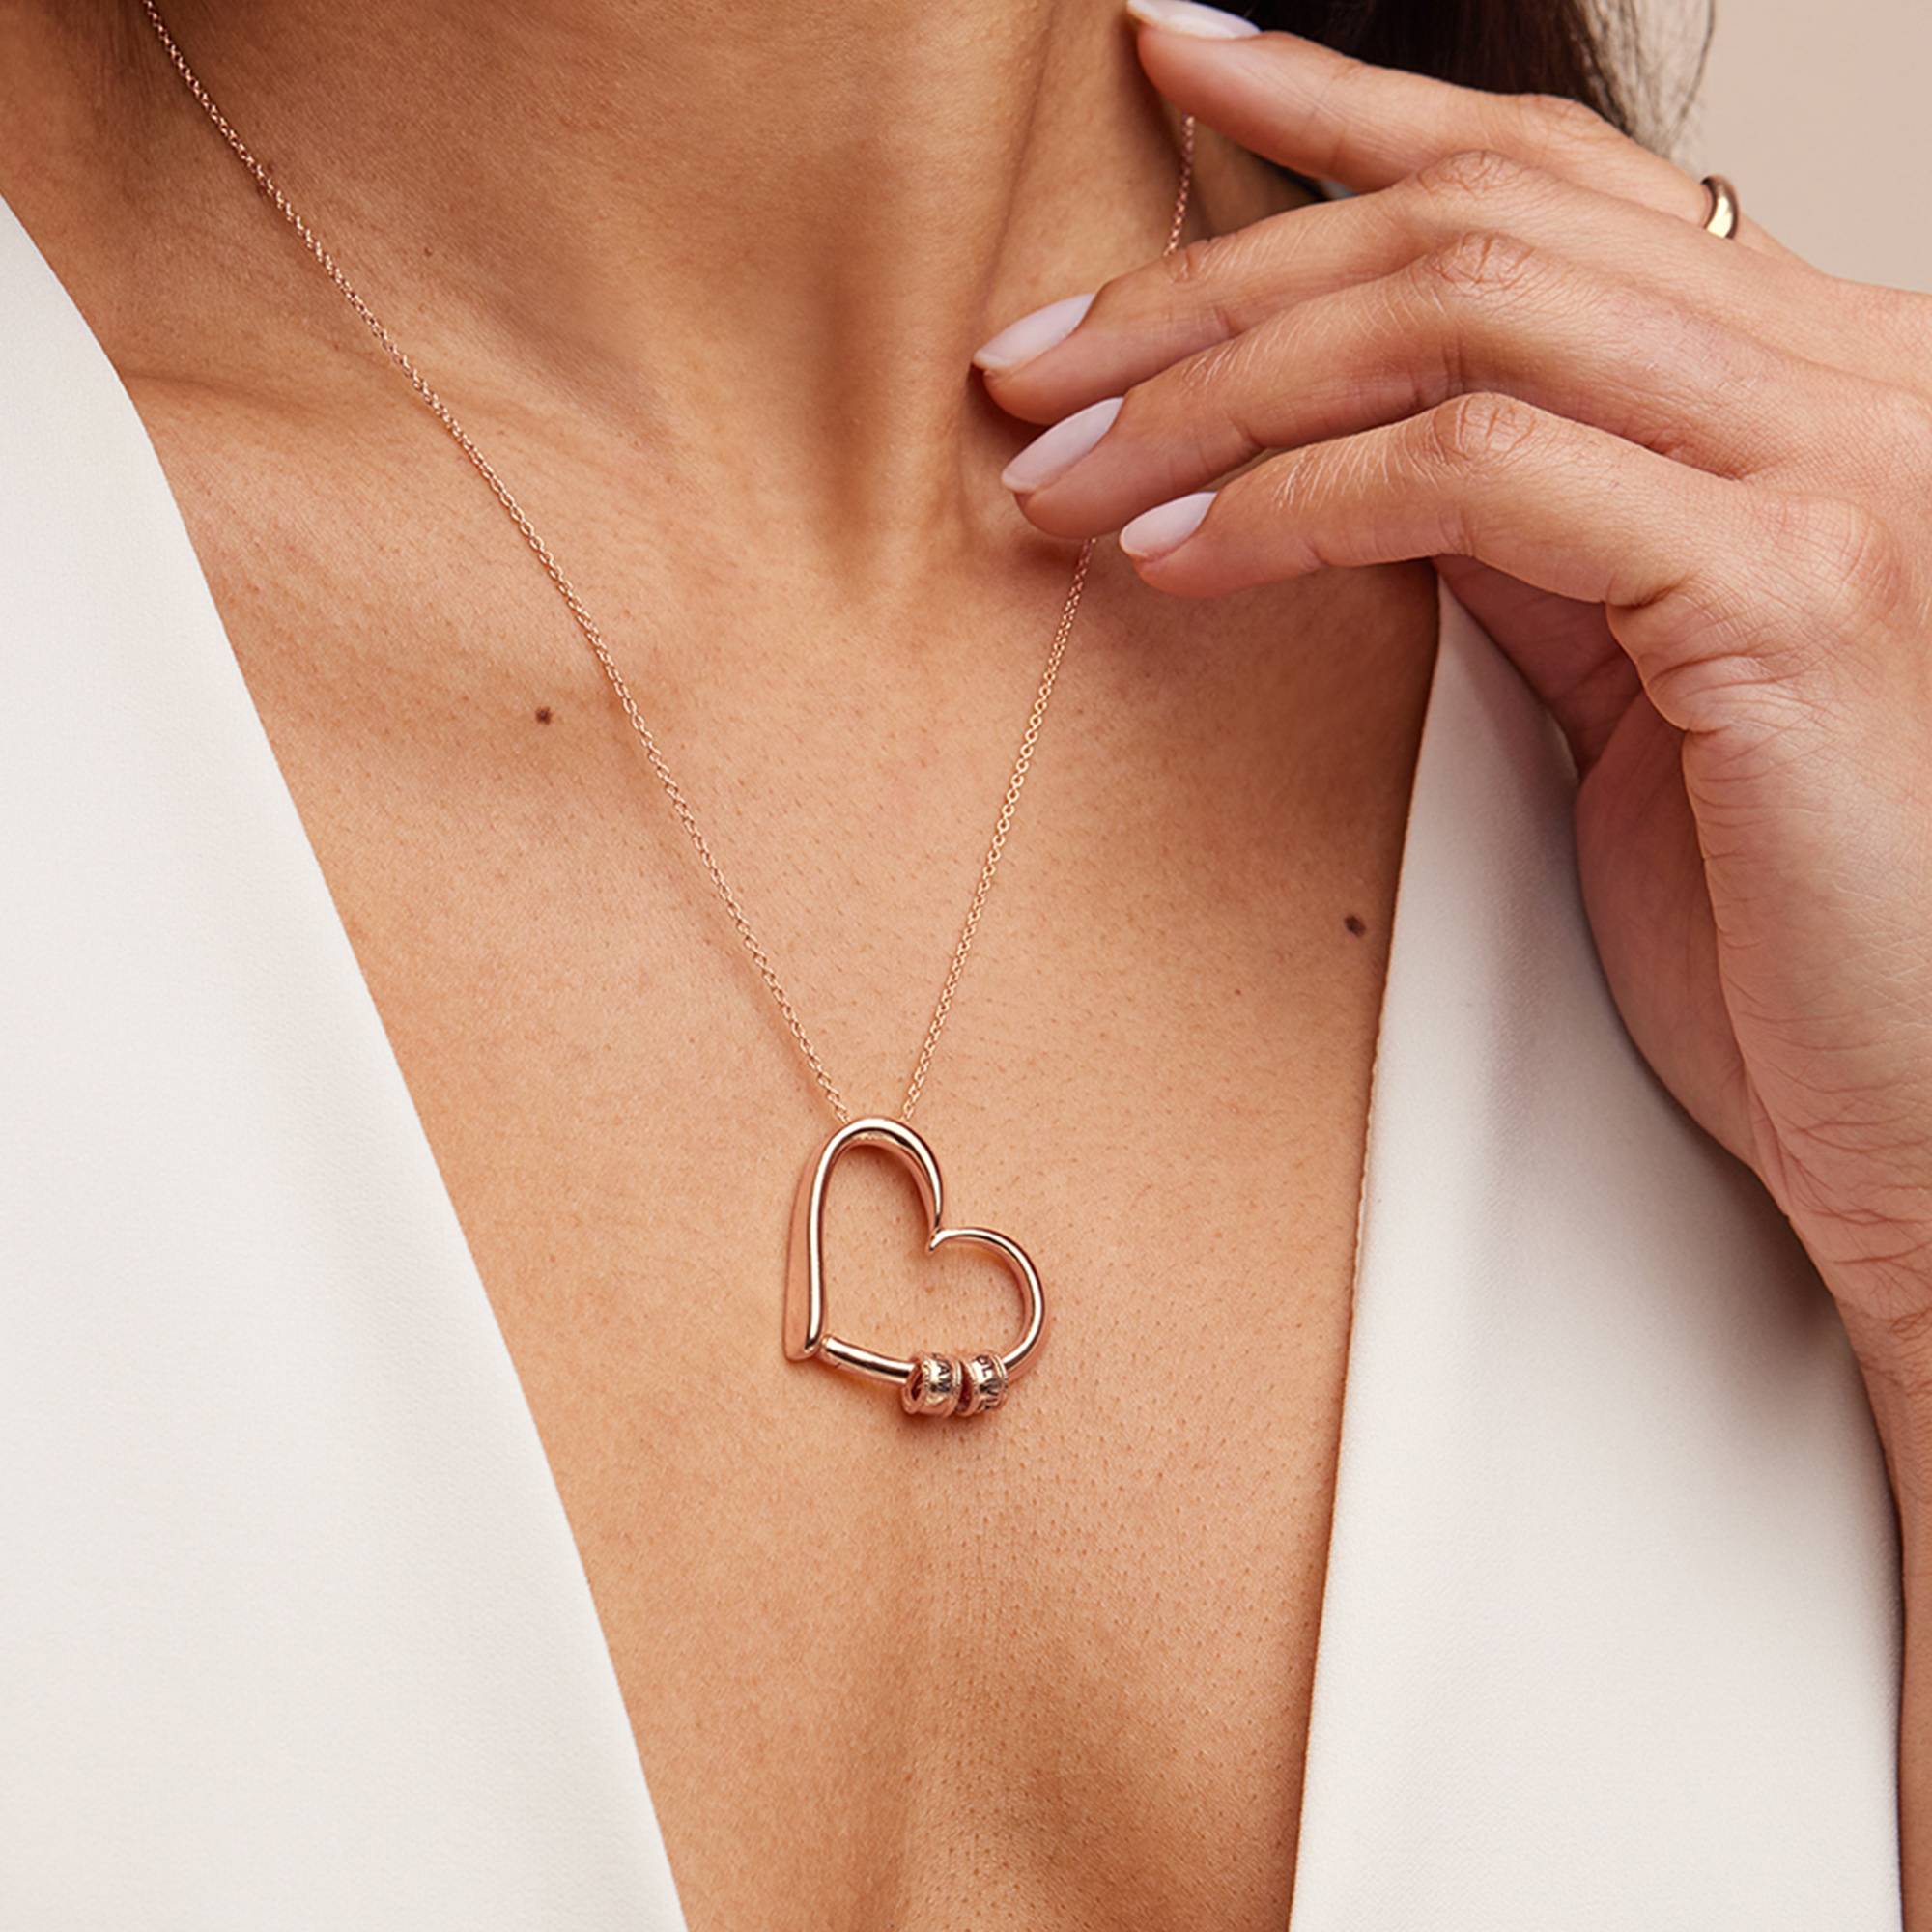 Charmante Herz-Halskette mit gravierten Beads - 750er Roségold-Vermeil-6 Produktfoto